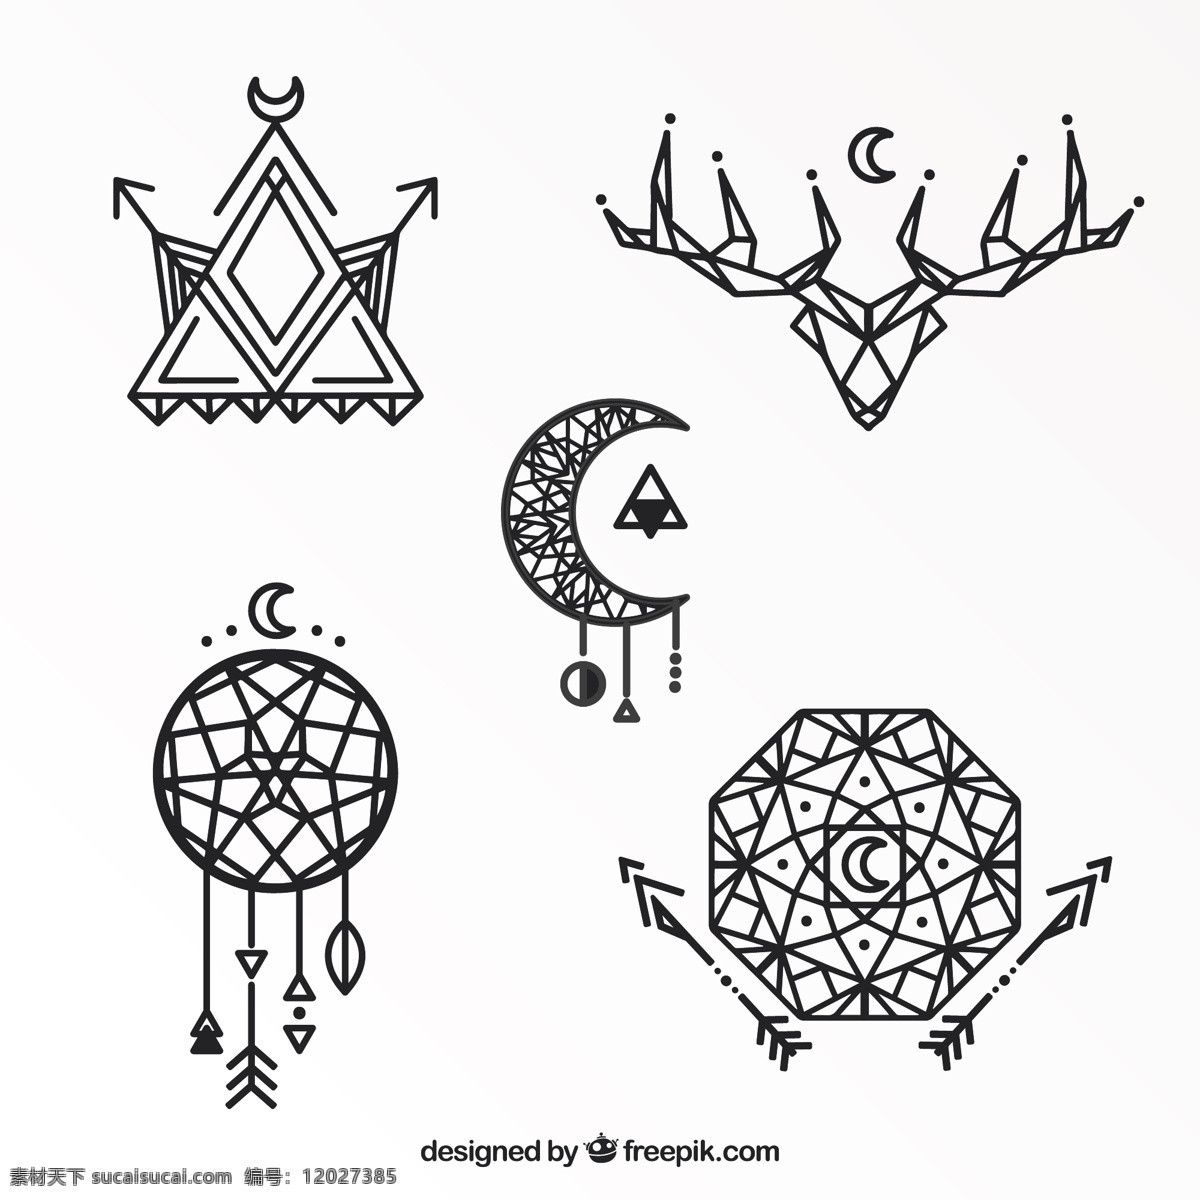 几何 种族 纹身 集 手 线条 绘画 手绘 造型 艺术 月亮 鹿 水墨画 民族 多边形 几何图形 符号 线条艺术 皮肤 文化